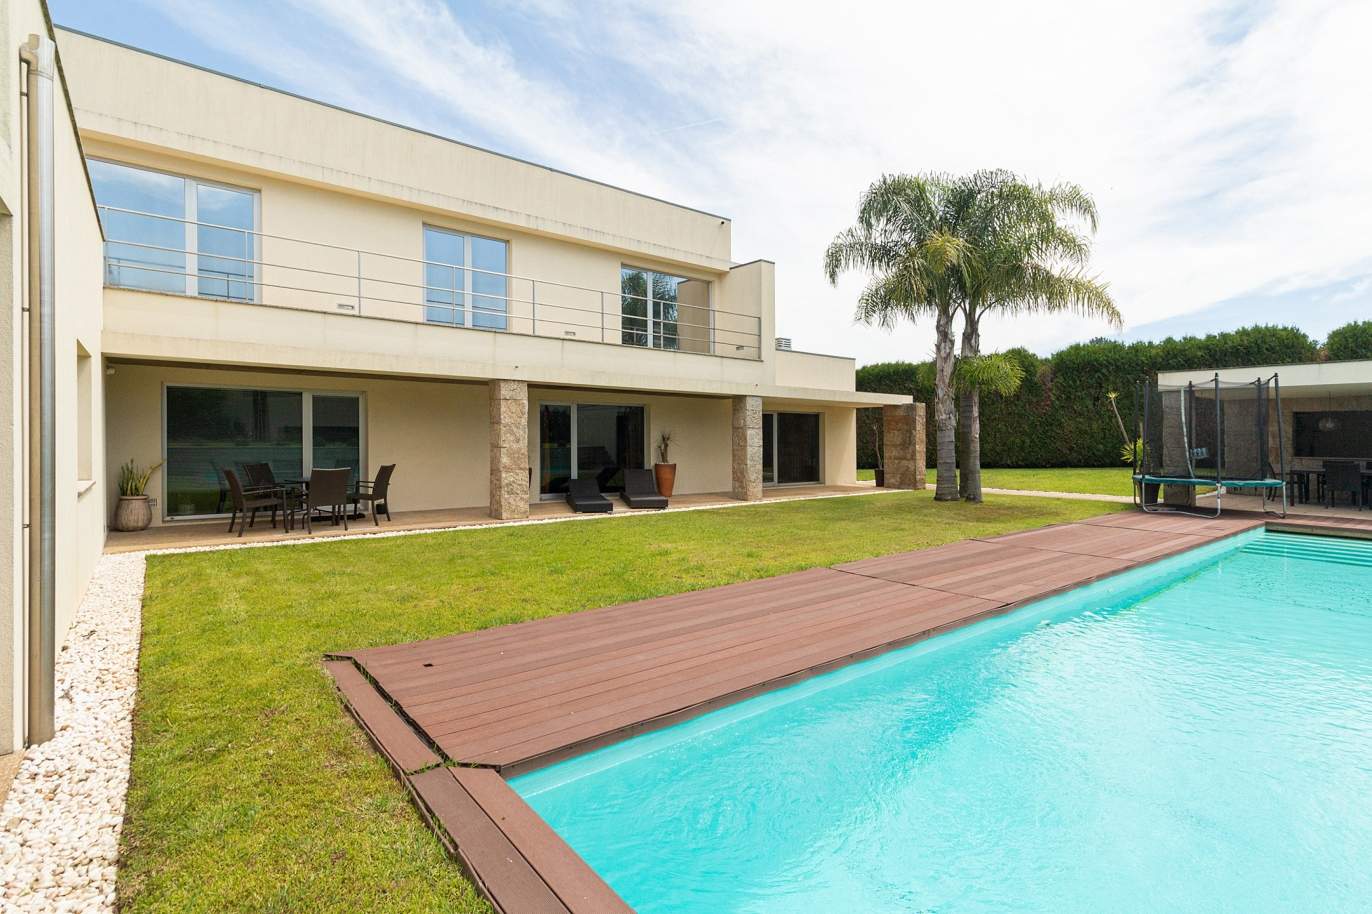 Villa mit Pool und Garten, zu verkaufen, in Avintes, V. N. Gaia, Portugal_174082